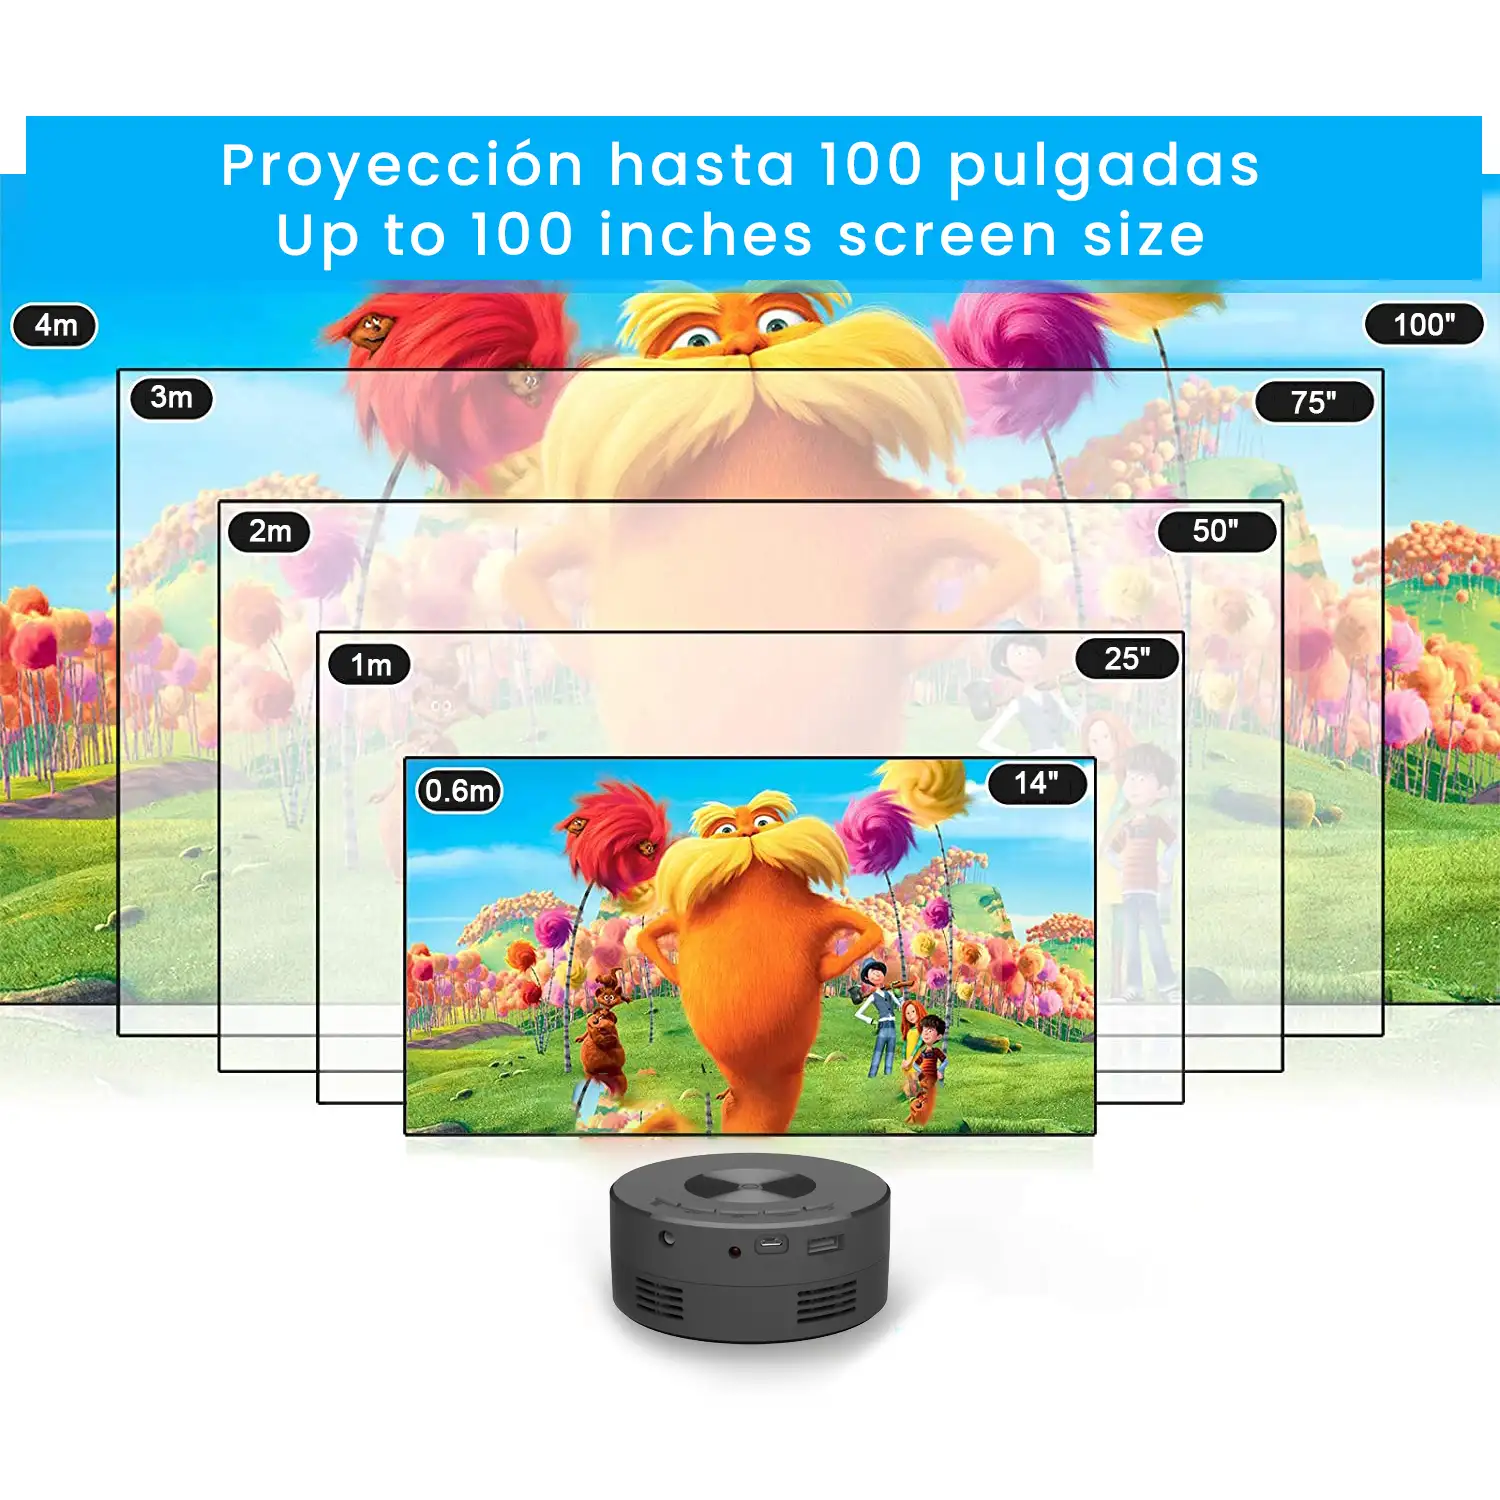 Mini proyector LCD YT200, duplicación de pantalla iOS/Android por cable. Soporta resolucion 1080P. Conexión USB. De 14 a 100 pulgadas. Con mando a distancia.